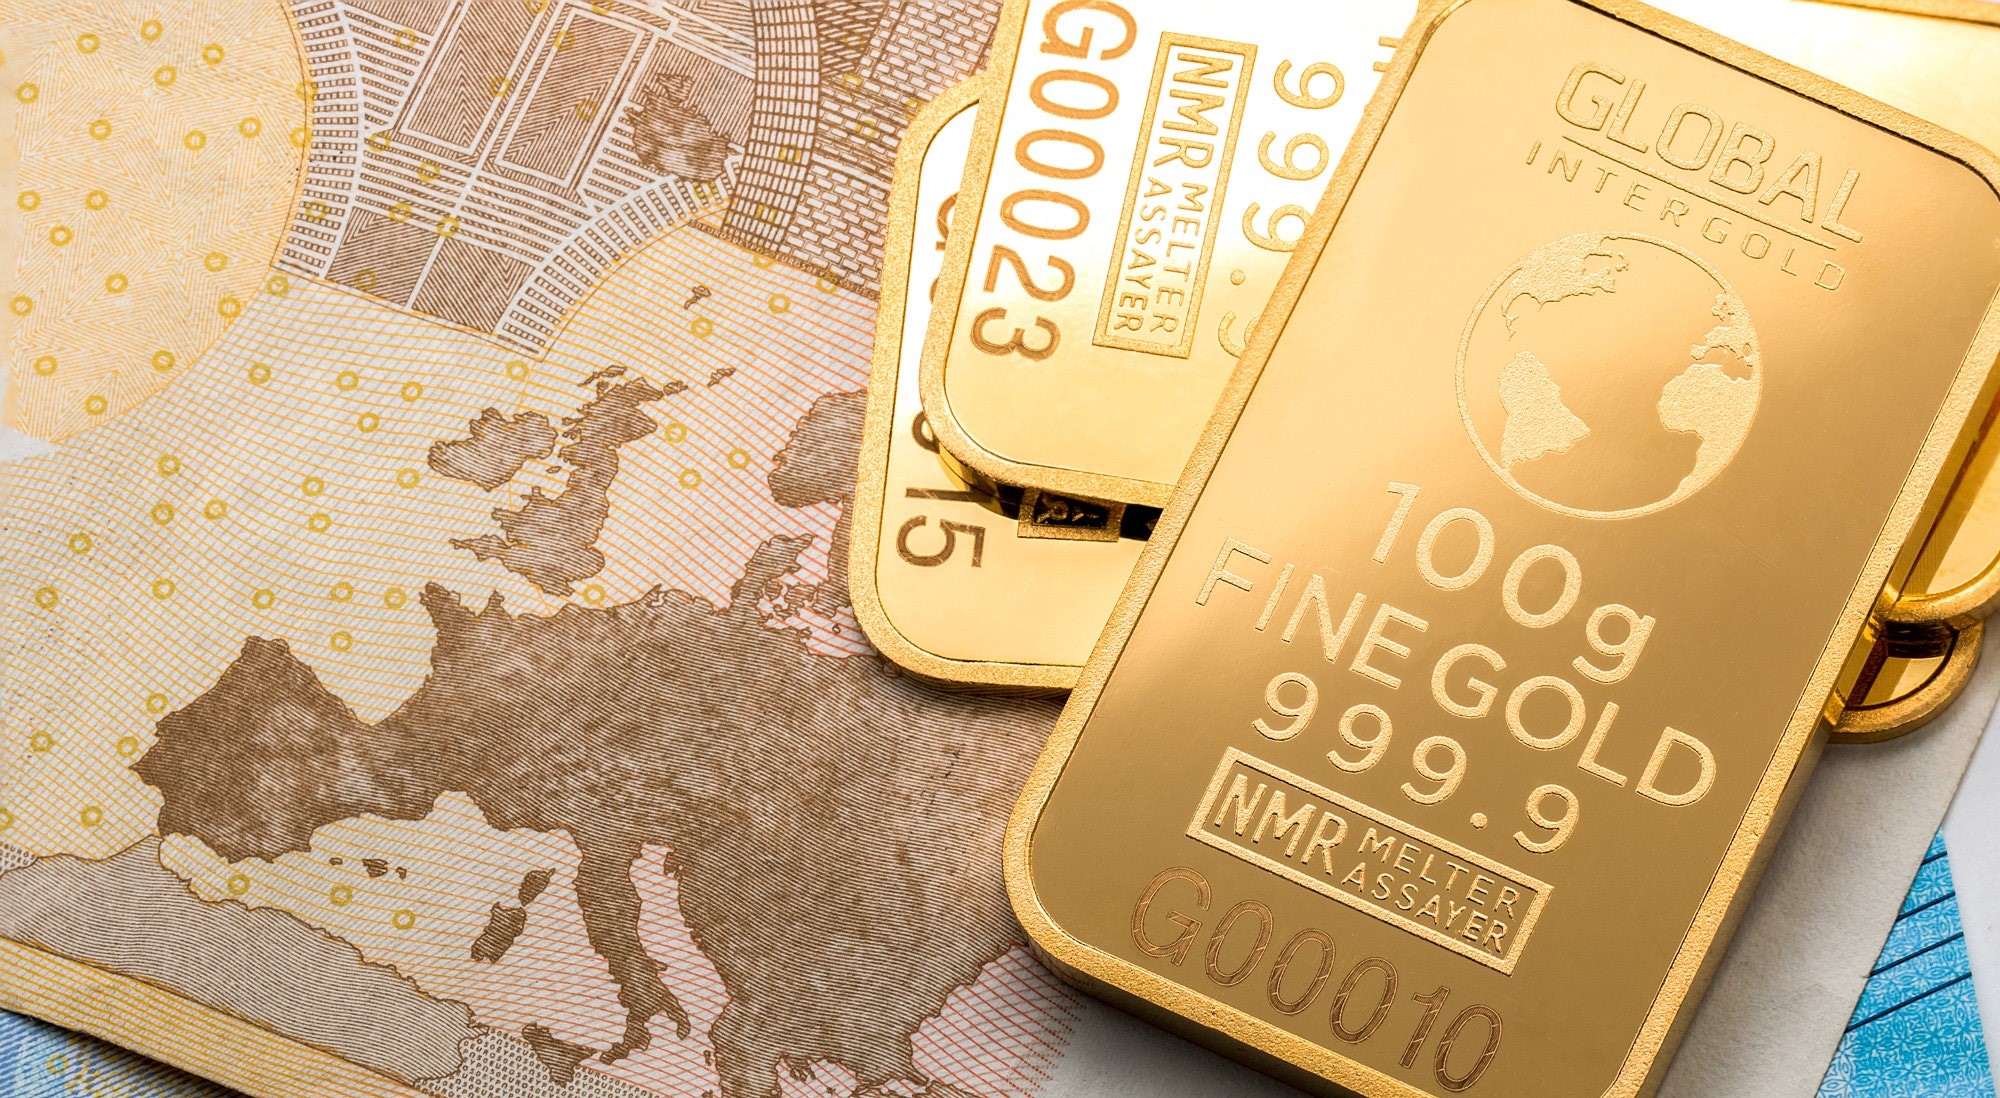 RAPORT WGC: Prognoza dla rynku złota na rok 2019